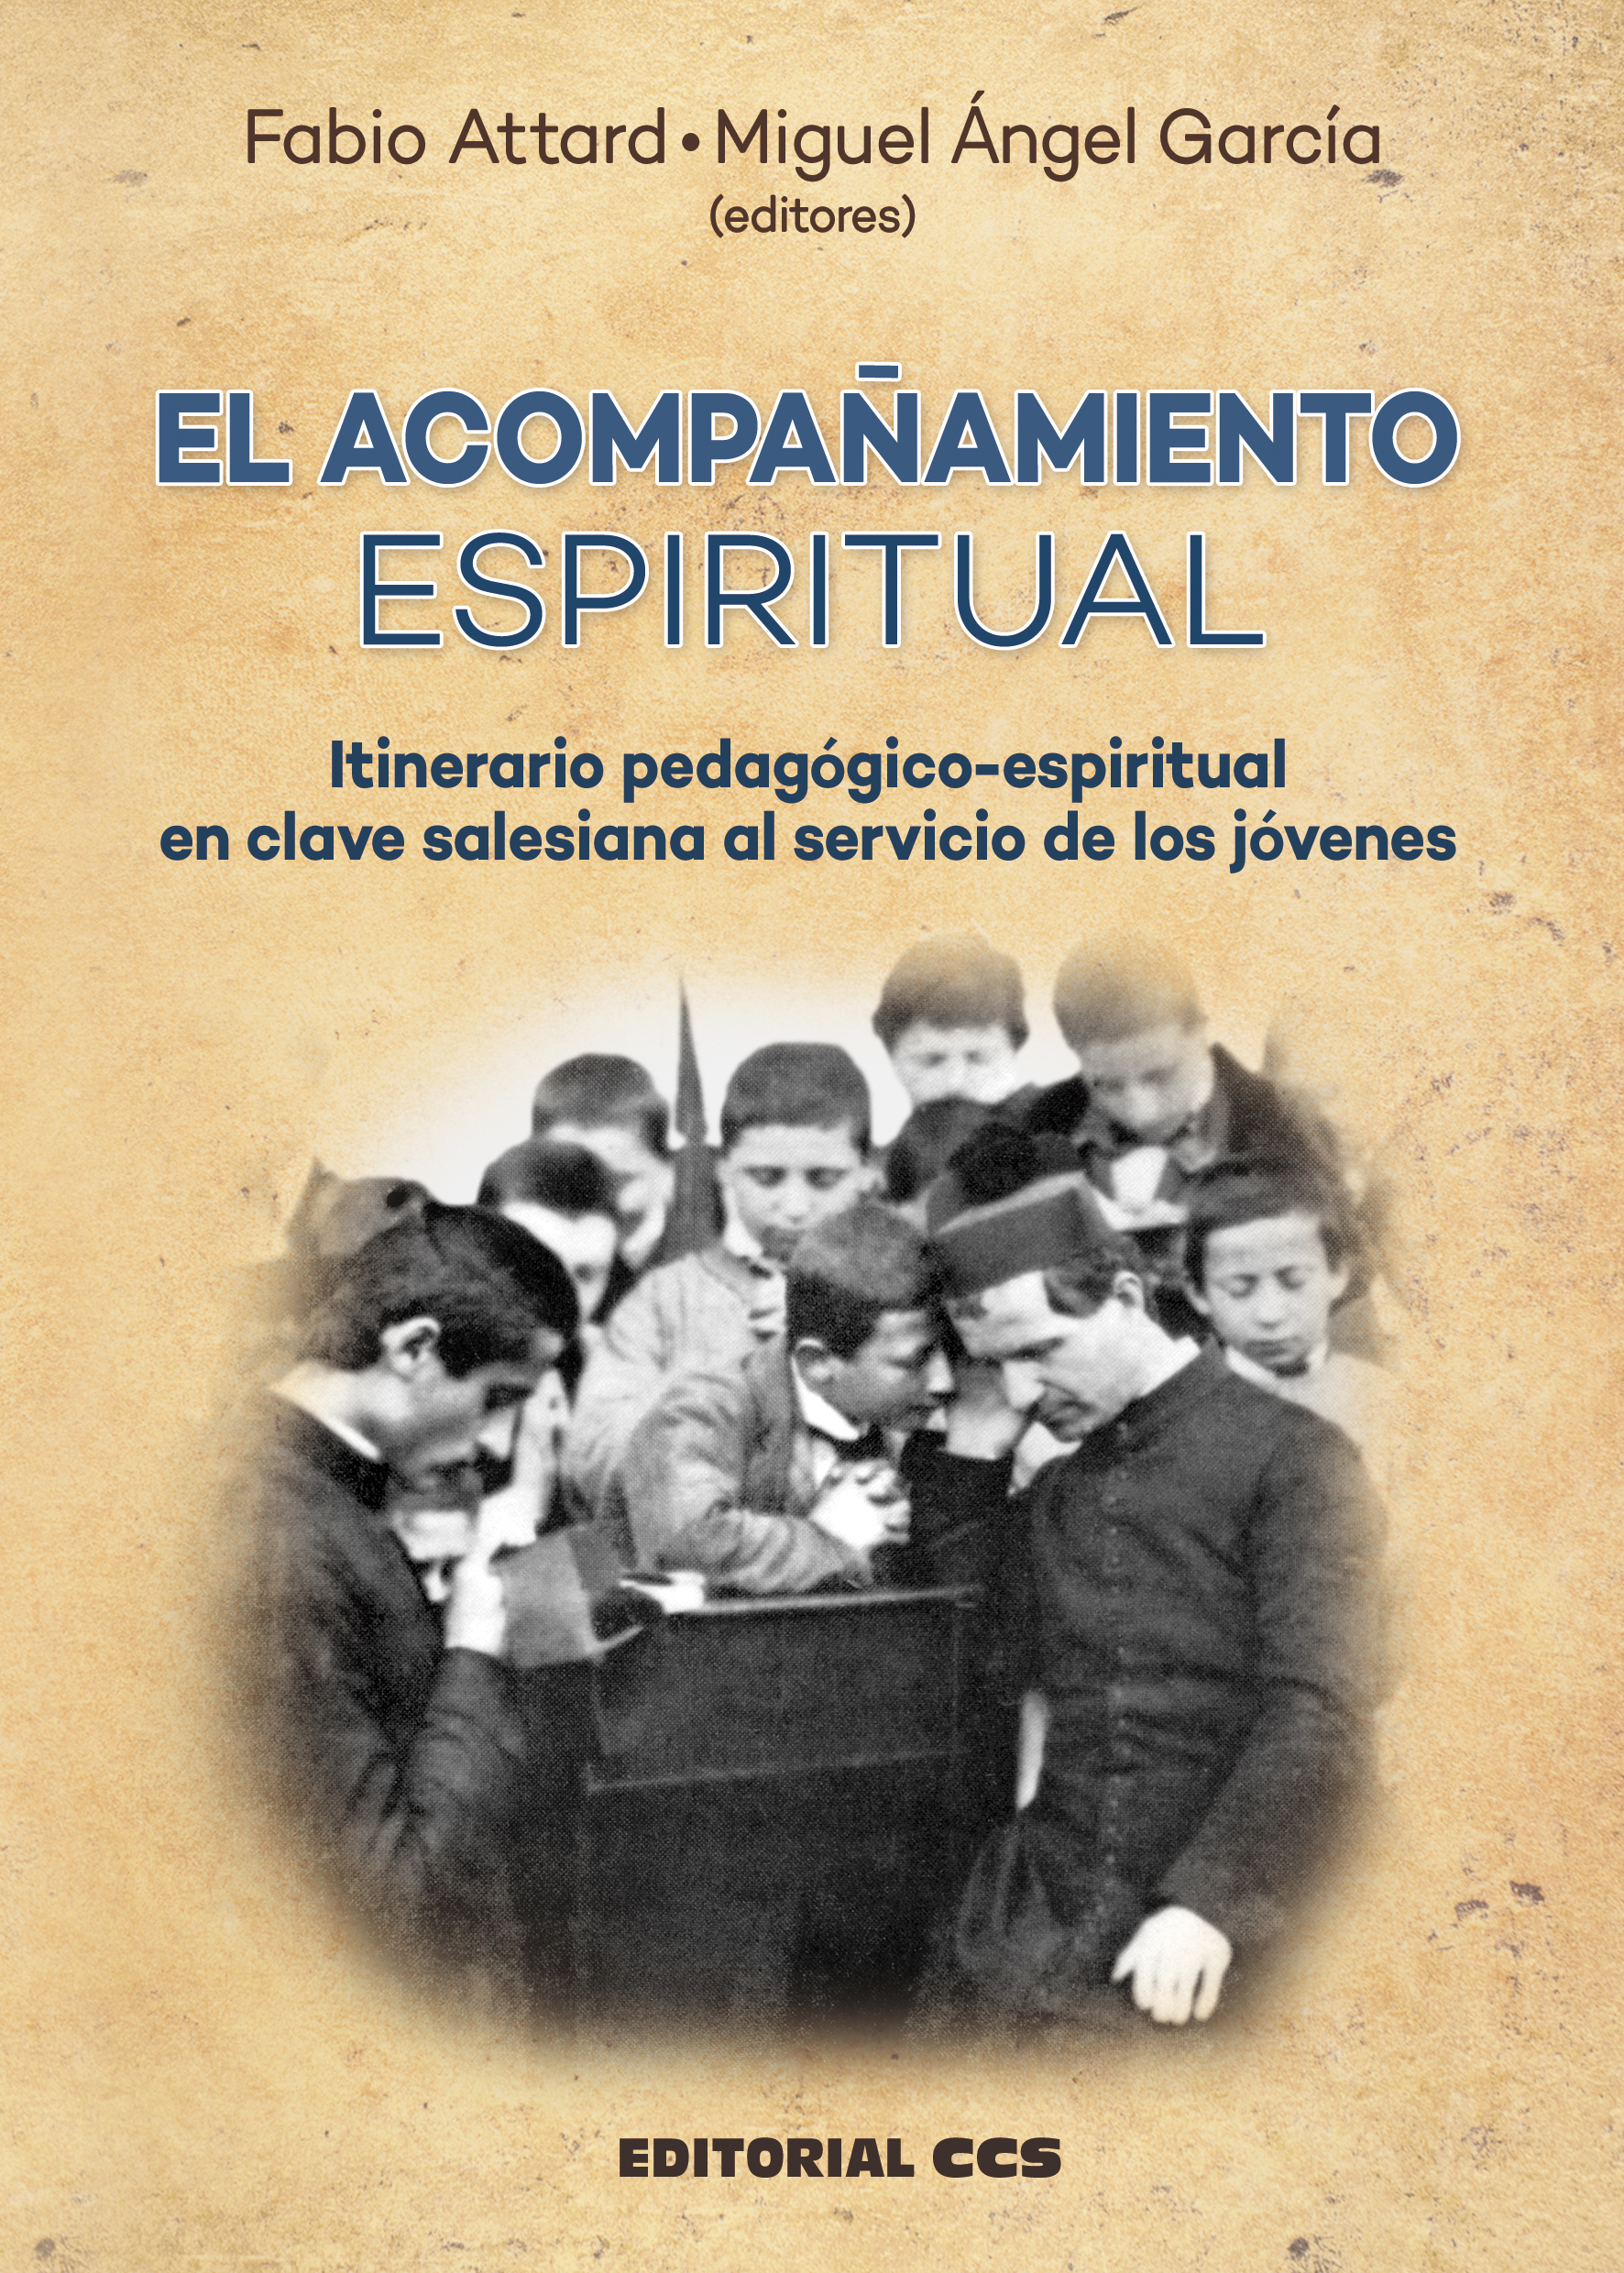 El acompañamiento espiritual   «Itinerario pedagógico-espiritual en clave salesiana al servicio de los jóvenes»